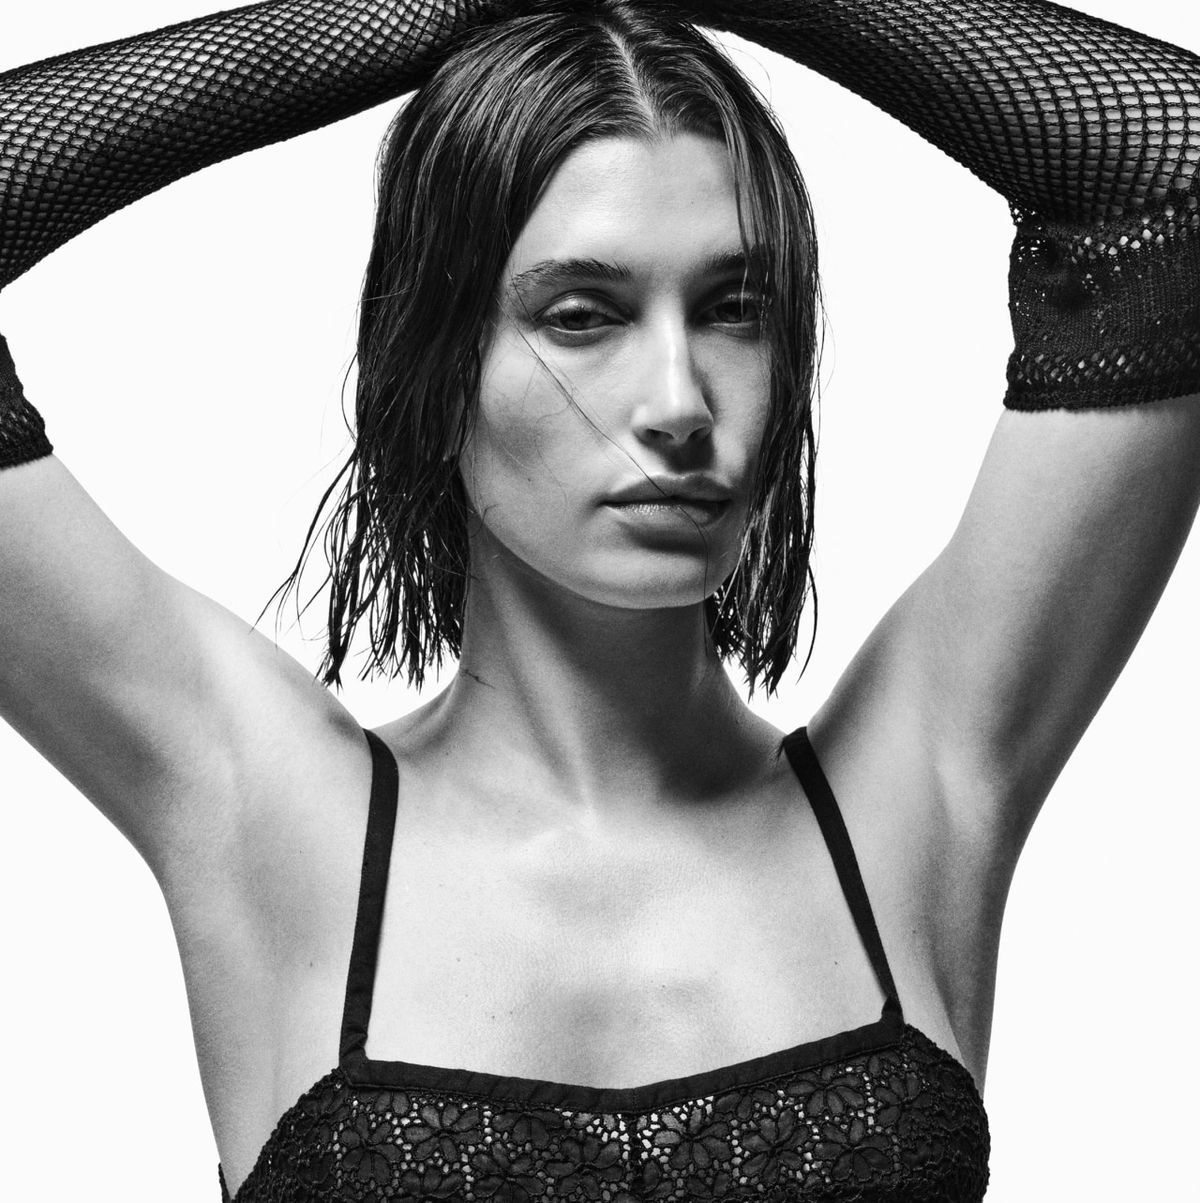 Hailey Bieber wears see-through bra for Vogue Australia